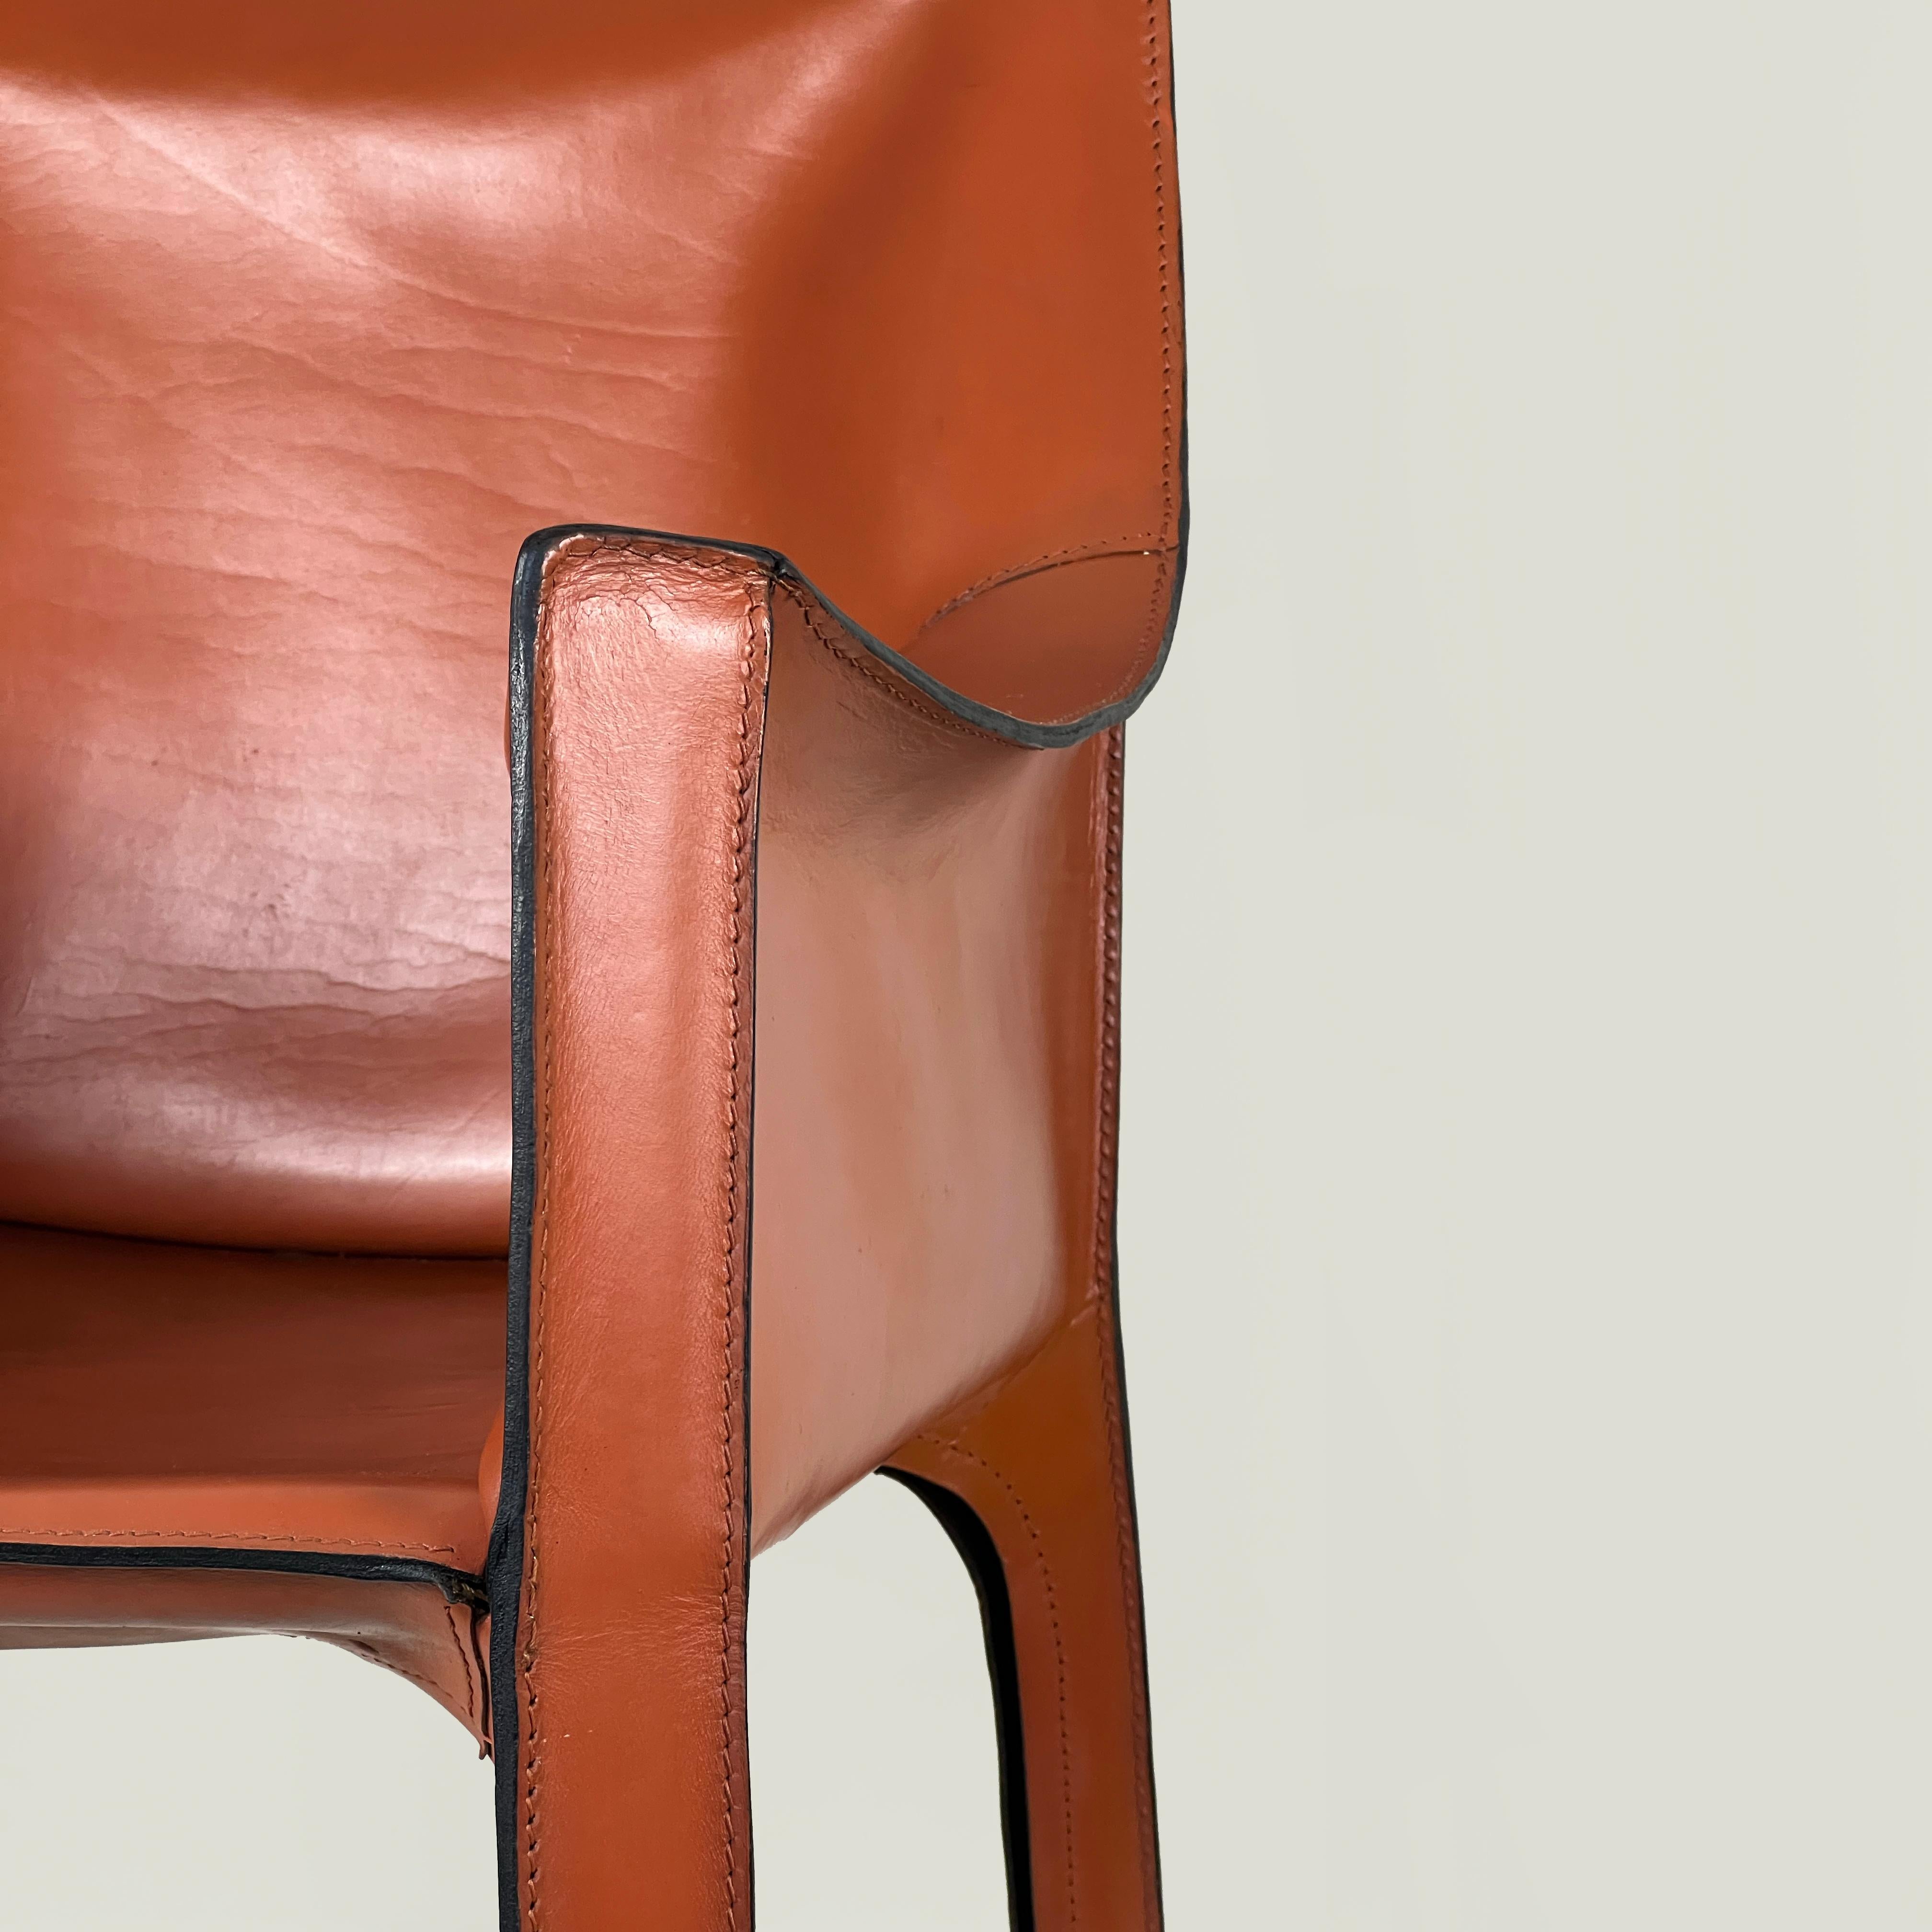 Fauteuil CAB 413 de Mario Bellini pour Cassina, Italie, années 1970

La chaise Cab 413 représente la réalisation pionnière de la première chaise au monde avec une structure en cuir autoportante. Le cuir est ajusté sur le cadre métallique,